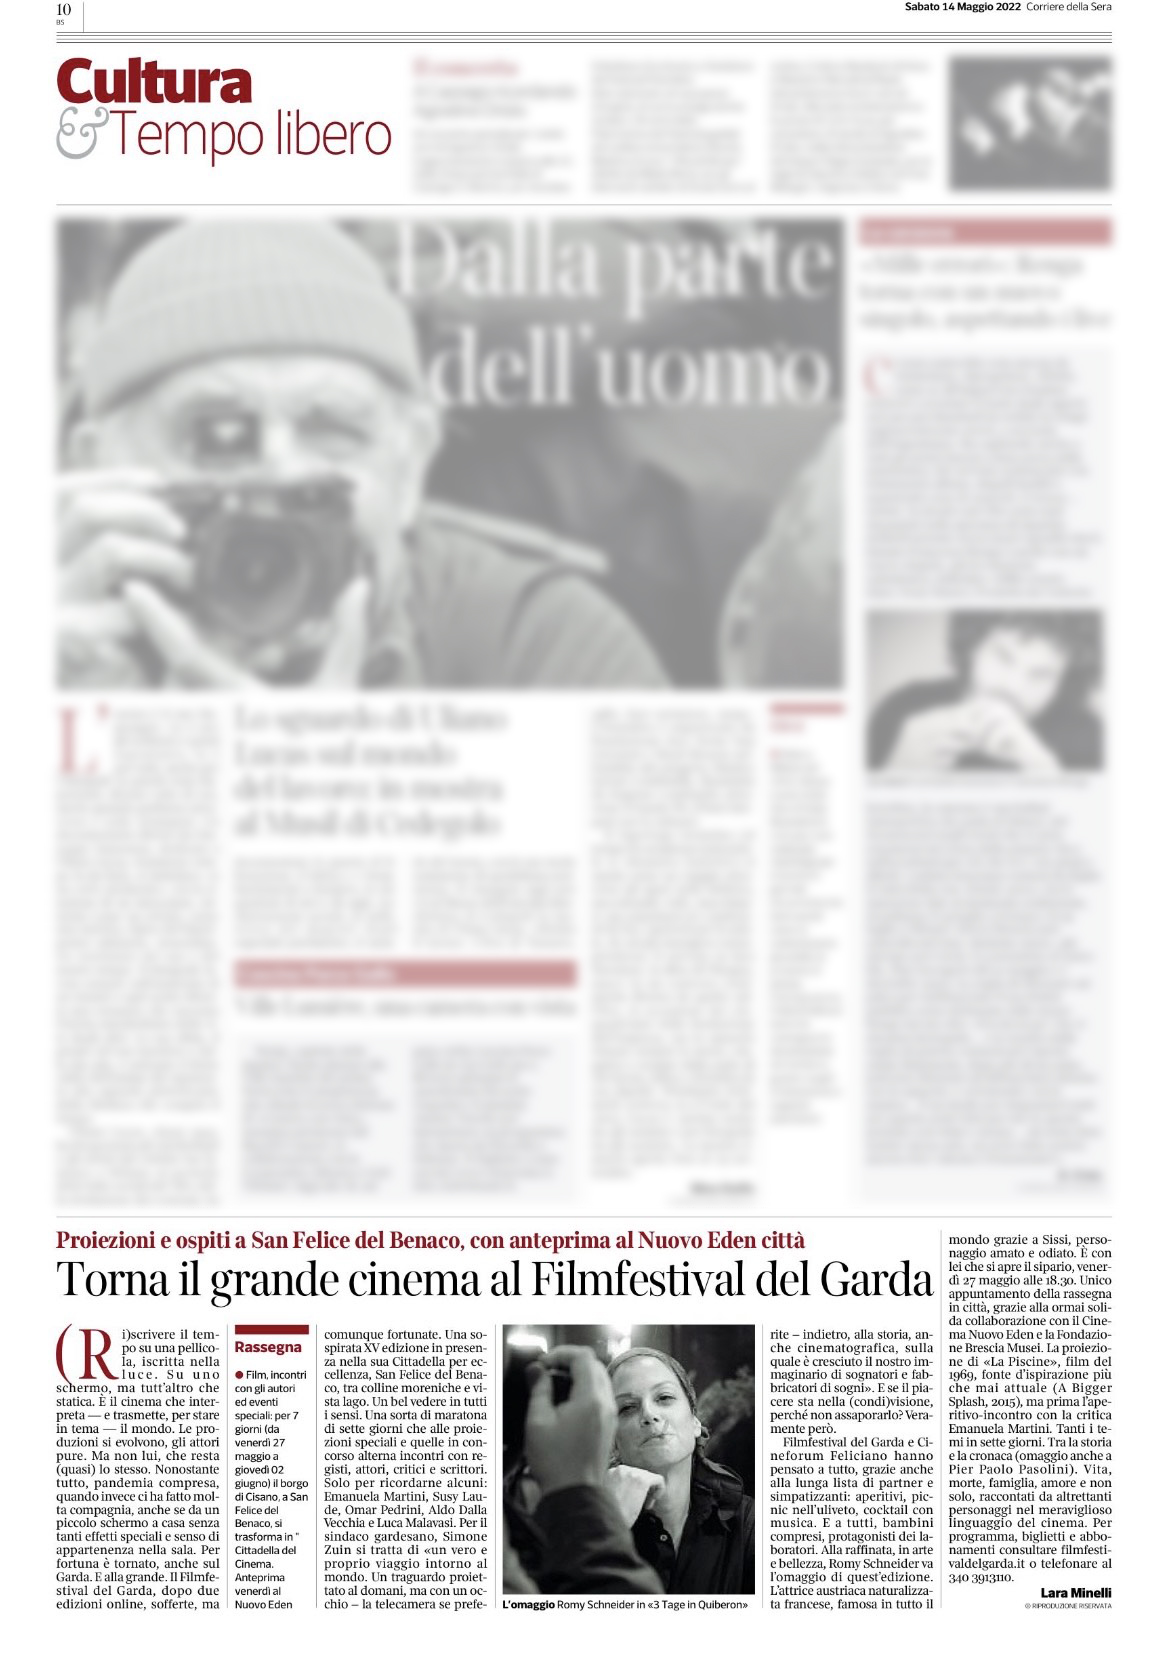 Corriere della Sera | 14 maggio 2022 | Torna il grande cinema al Filmfestival del Garda | Lara Minelli